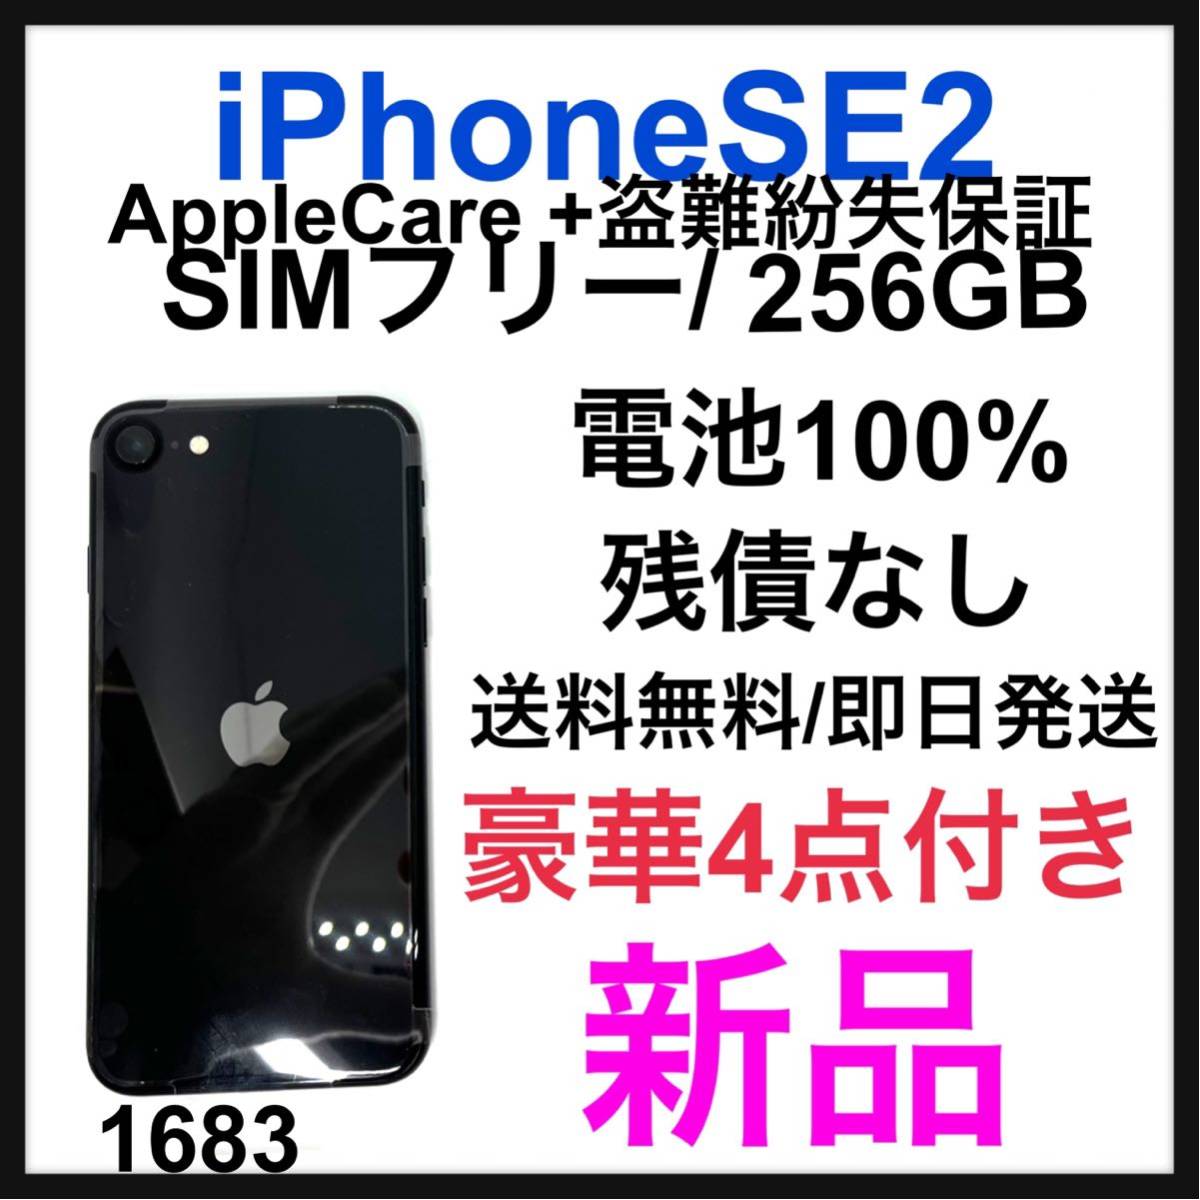 iPhone SE 第2世代 (SE2) ブラック 256 GB SIMフリー AppleCare + 盗難